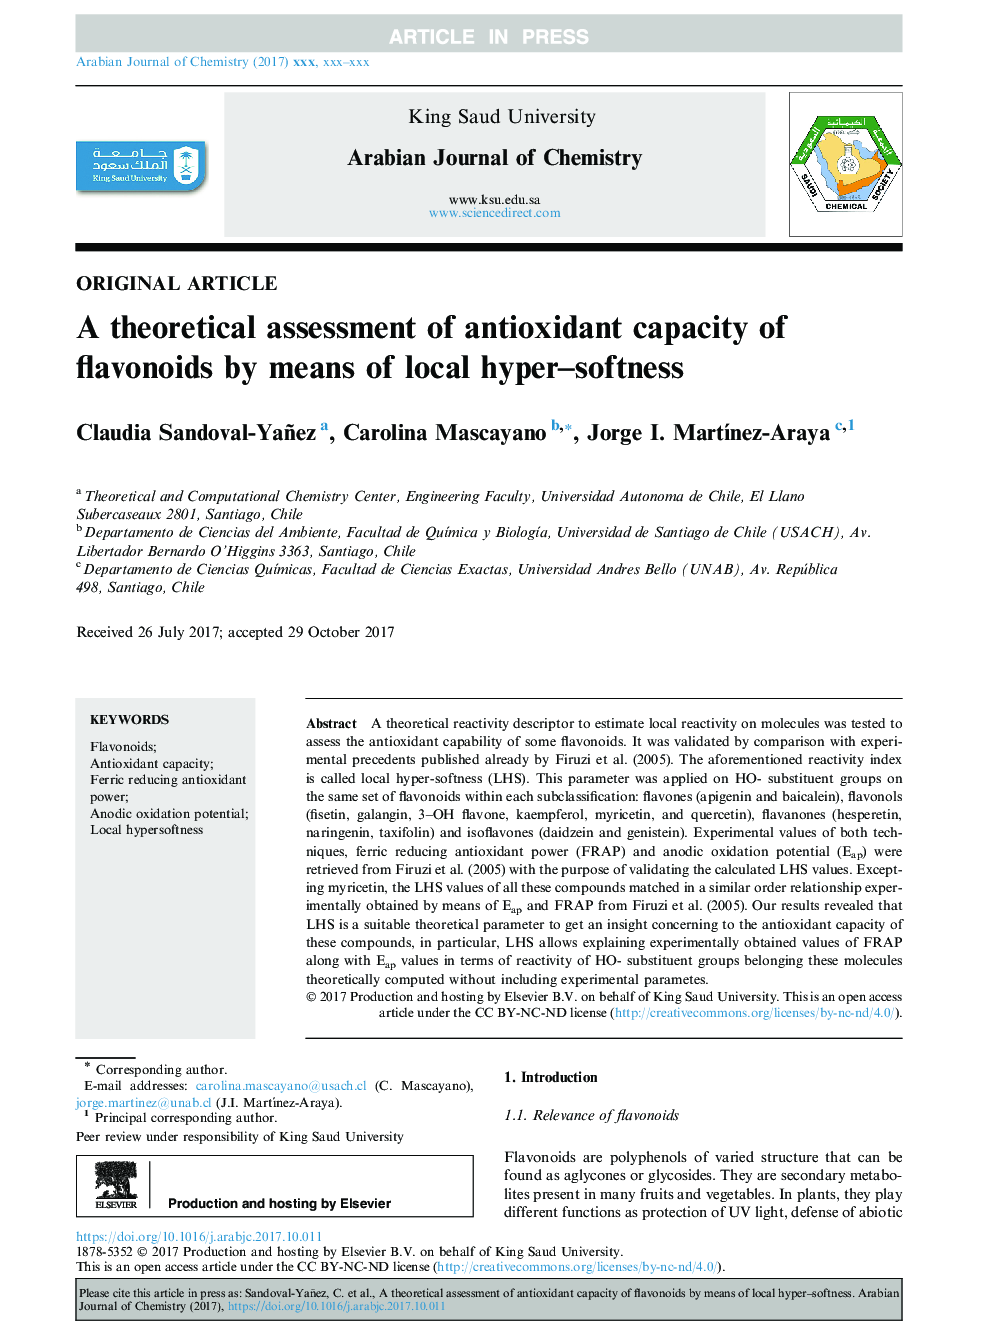 ارزیابی تئوری ظرفیت آنتی اکسیدانی فلاونوئیدها با استفاده از نرمی سطح محلی 